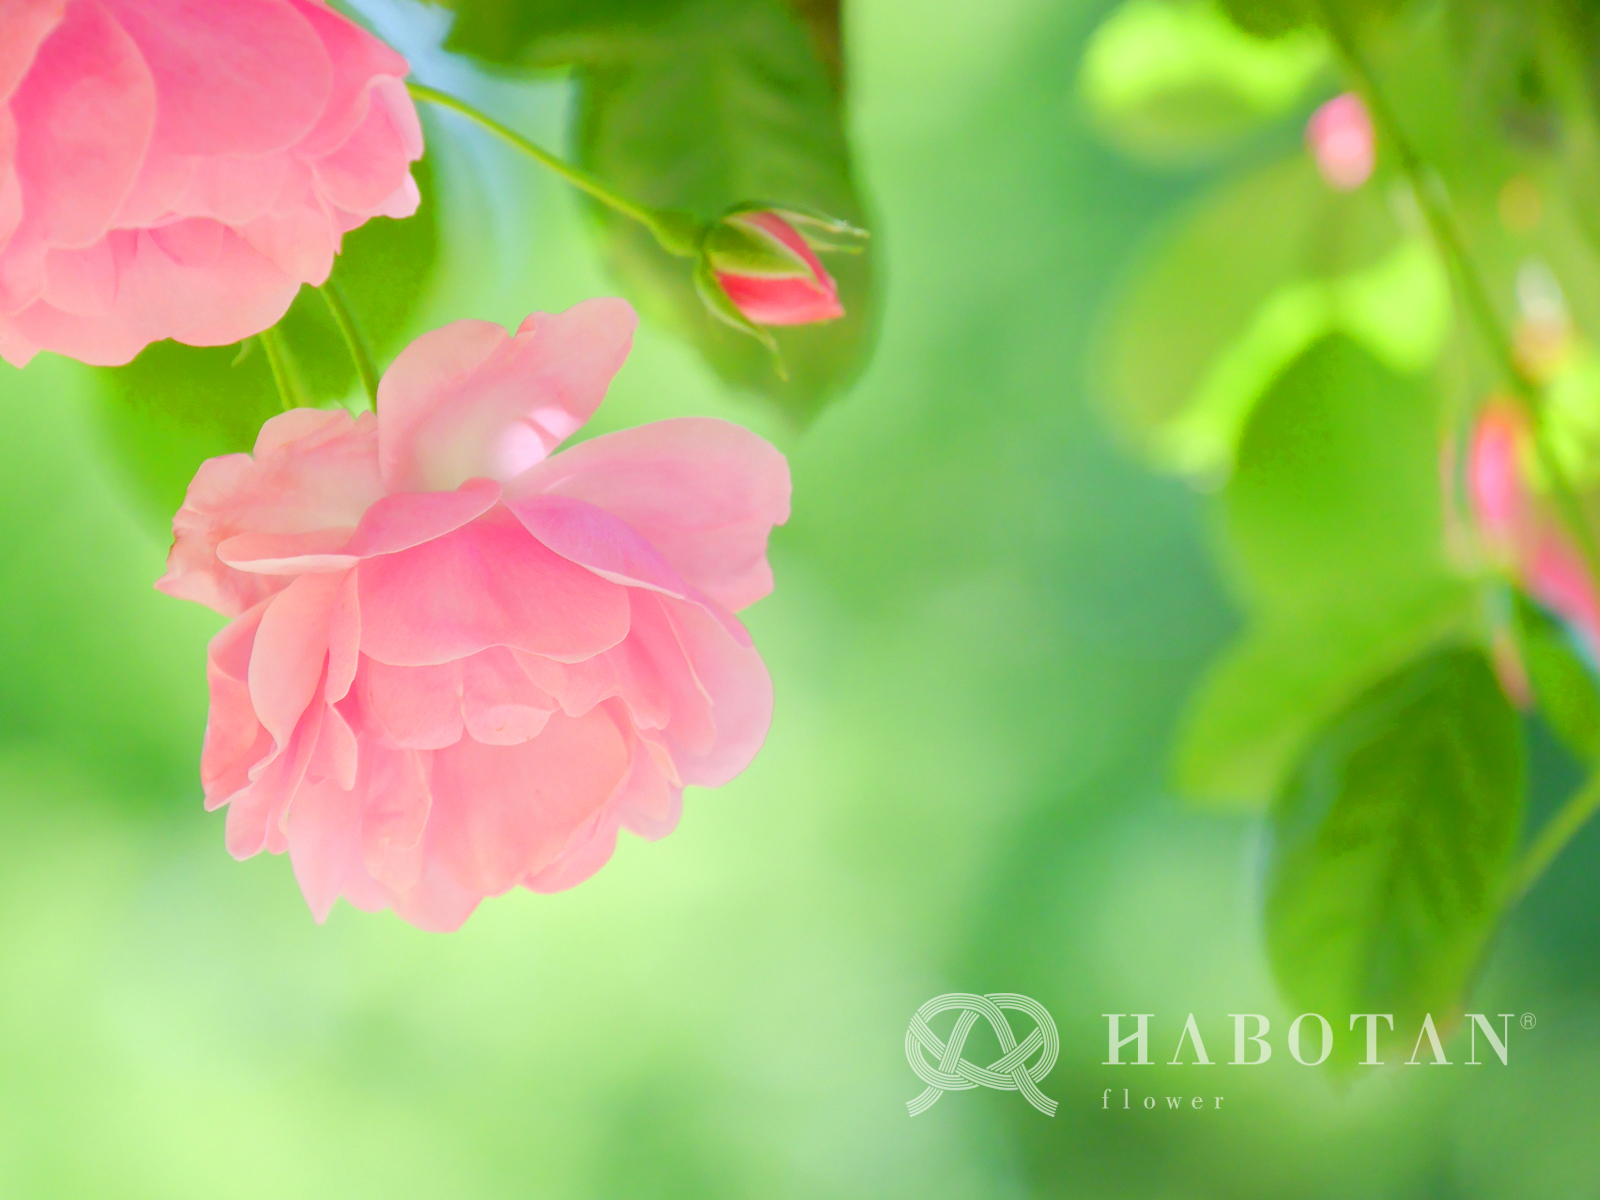 お花の壁紙プレゼント 法人向け花の配達 ギフト Habotan Flower ハボタンフラワー